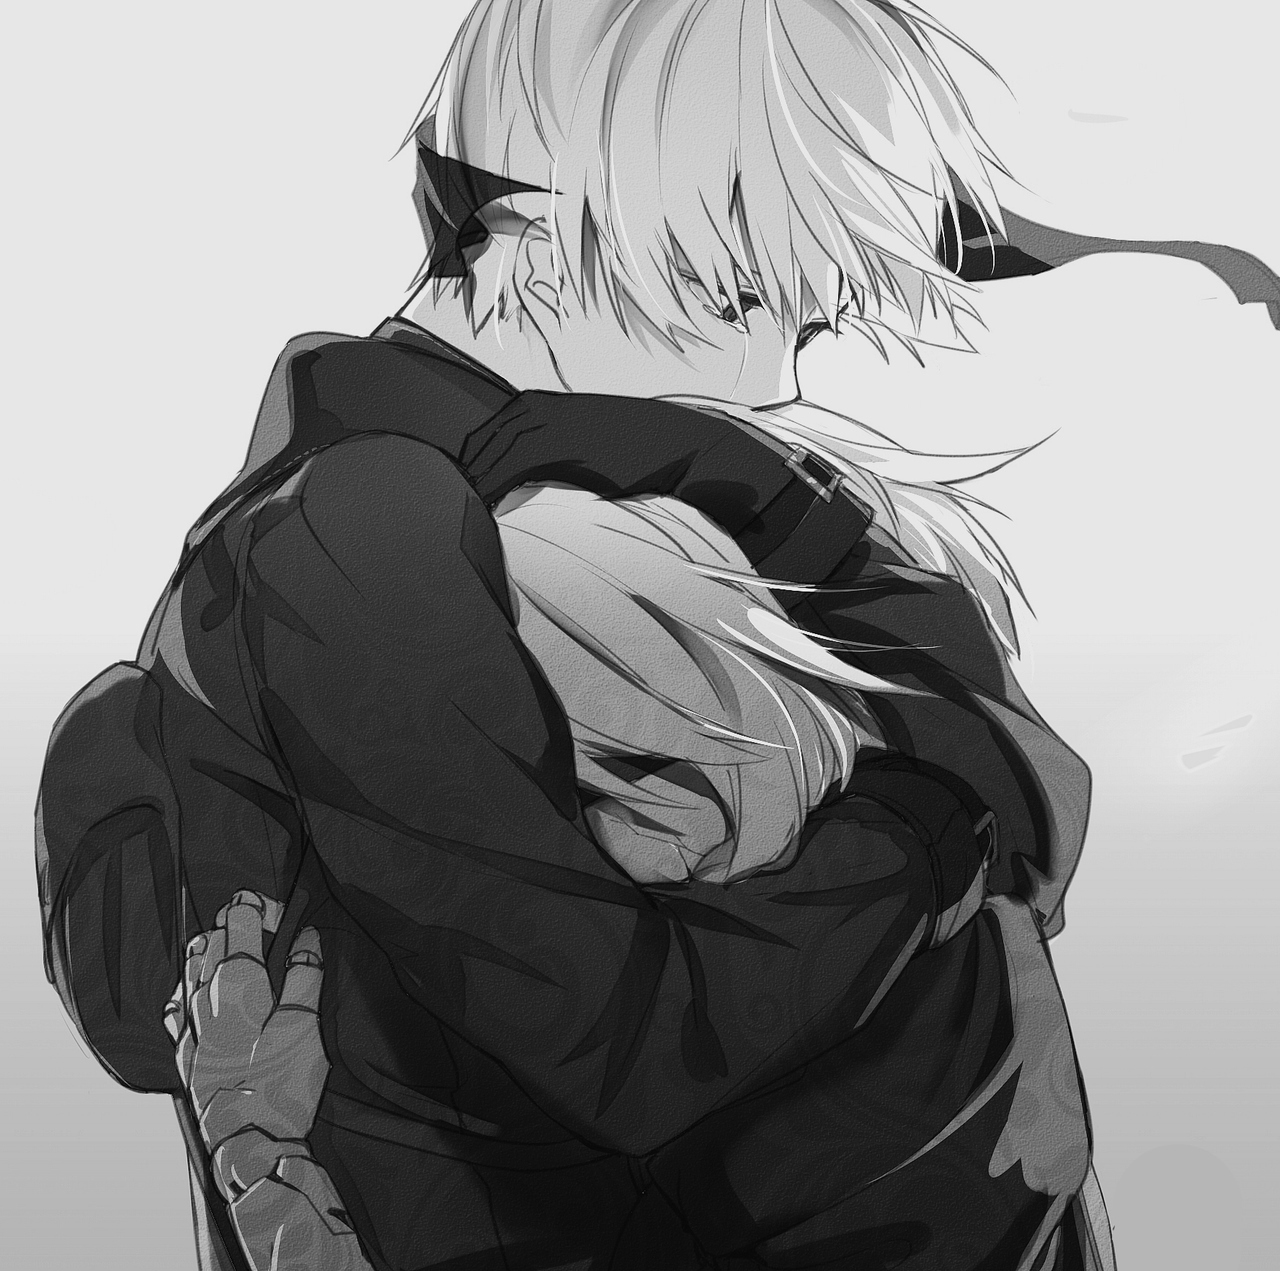 anime girl hugging sad boy